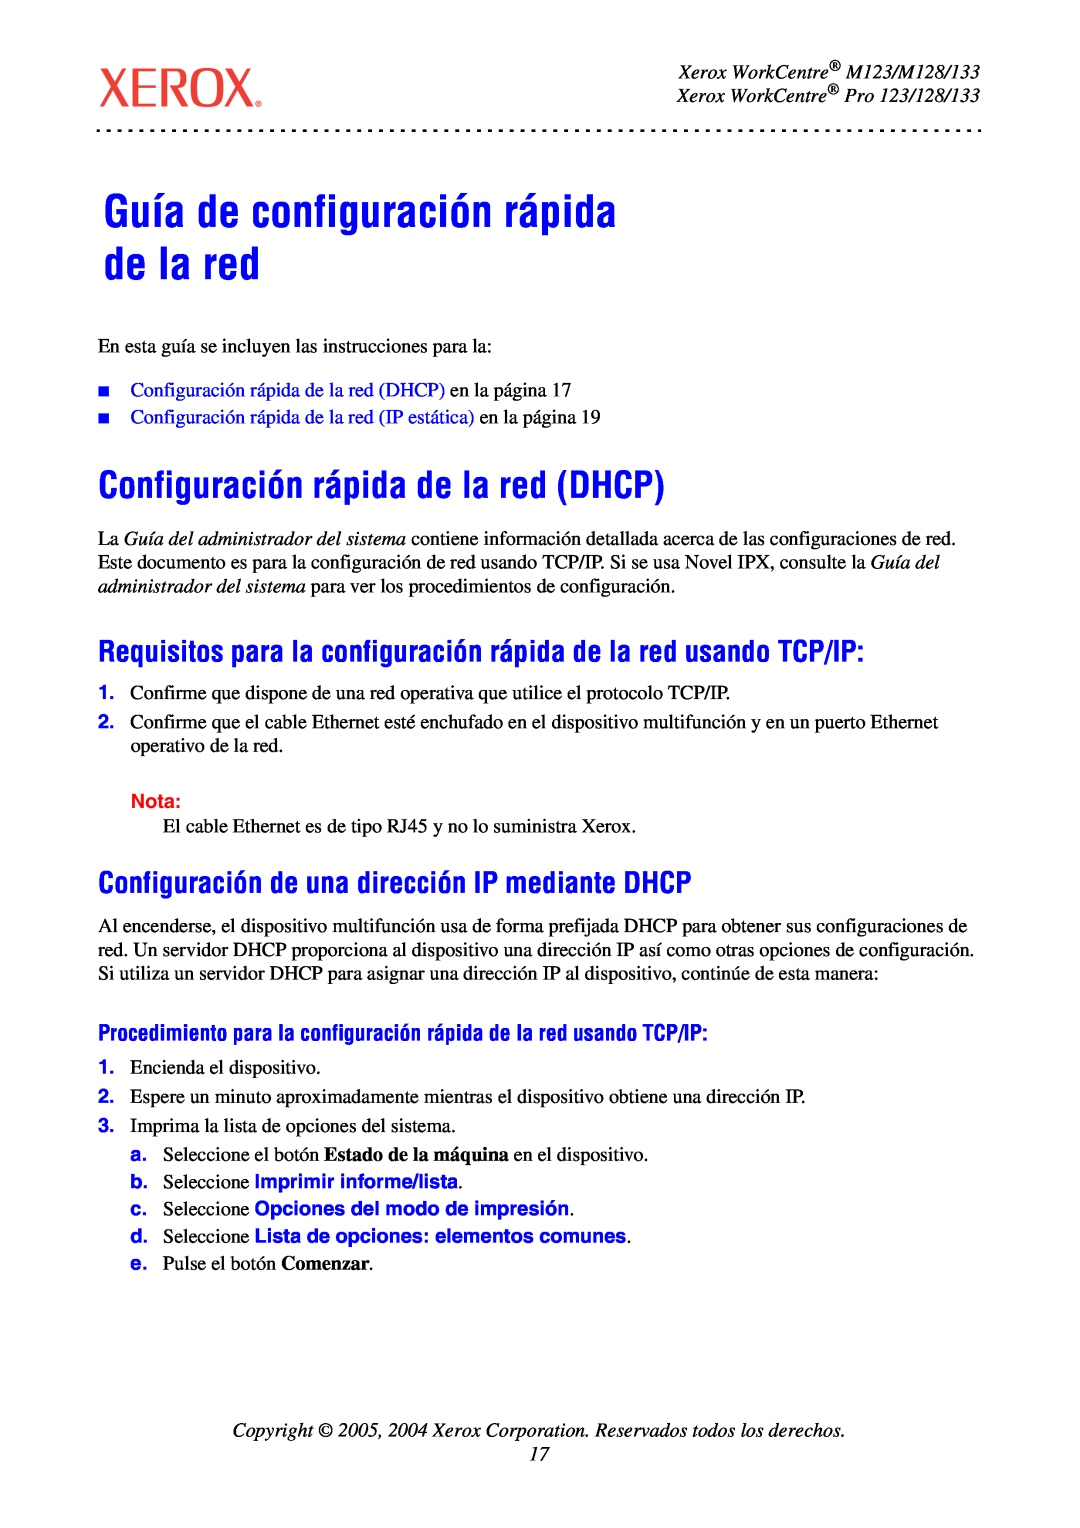 Xerox Guía de configuración rápida de la red, Configuración rápida de la red DHCP, Xerox WorkCentre M123/M128/133, Nota 